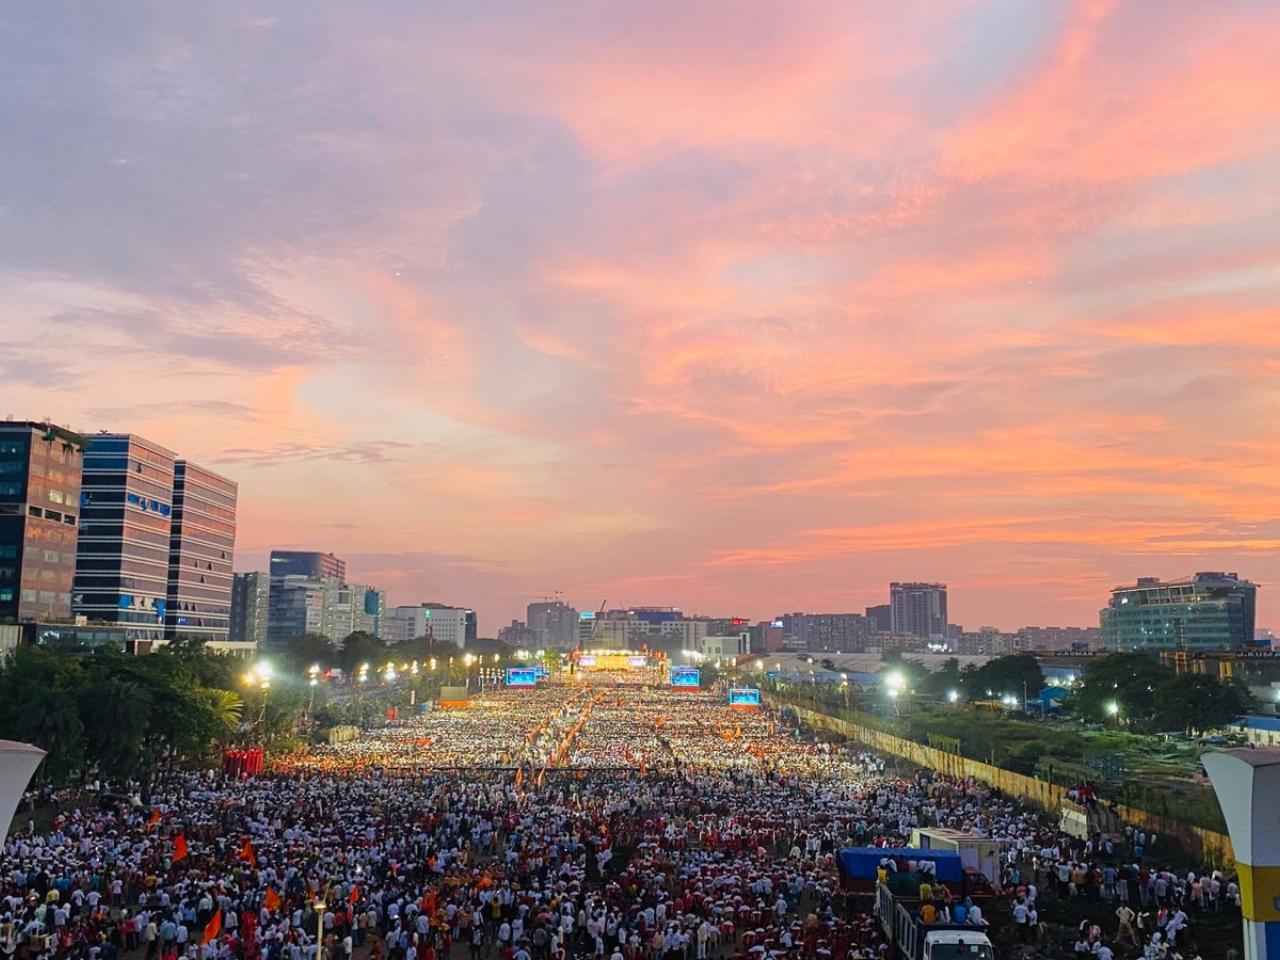 Sea of crowd at MMRDA grounds in Bandra-Kural complex (BKC) during Maharashtra CM Eknath Shinde's rally in Mumbai. Pic/Shadab Khan